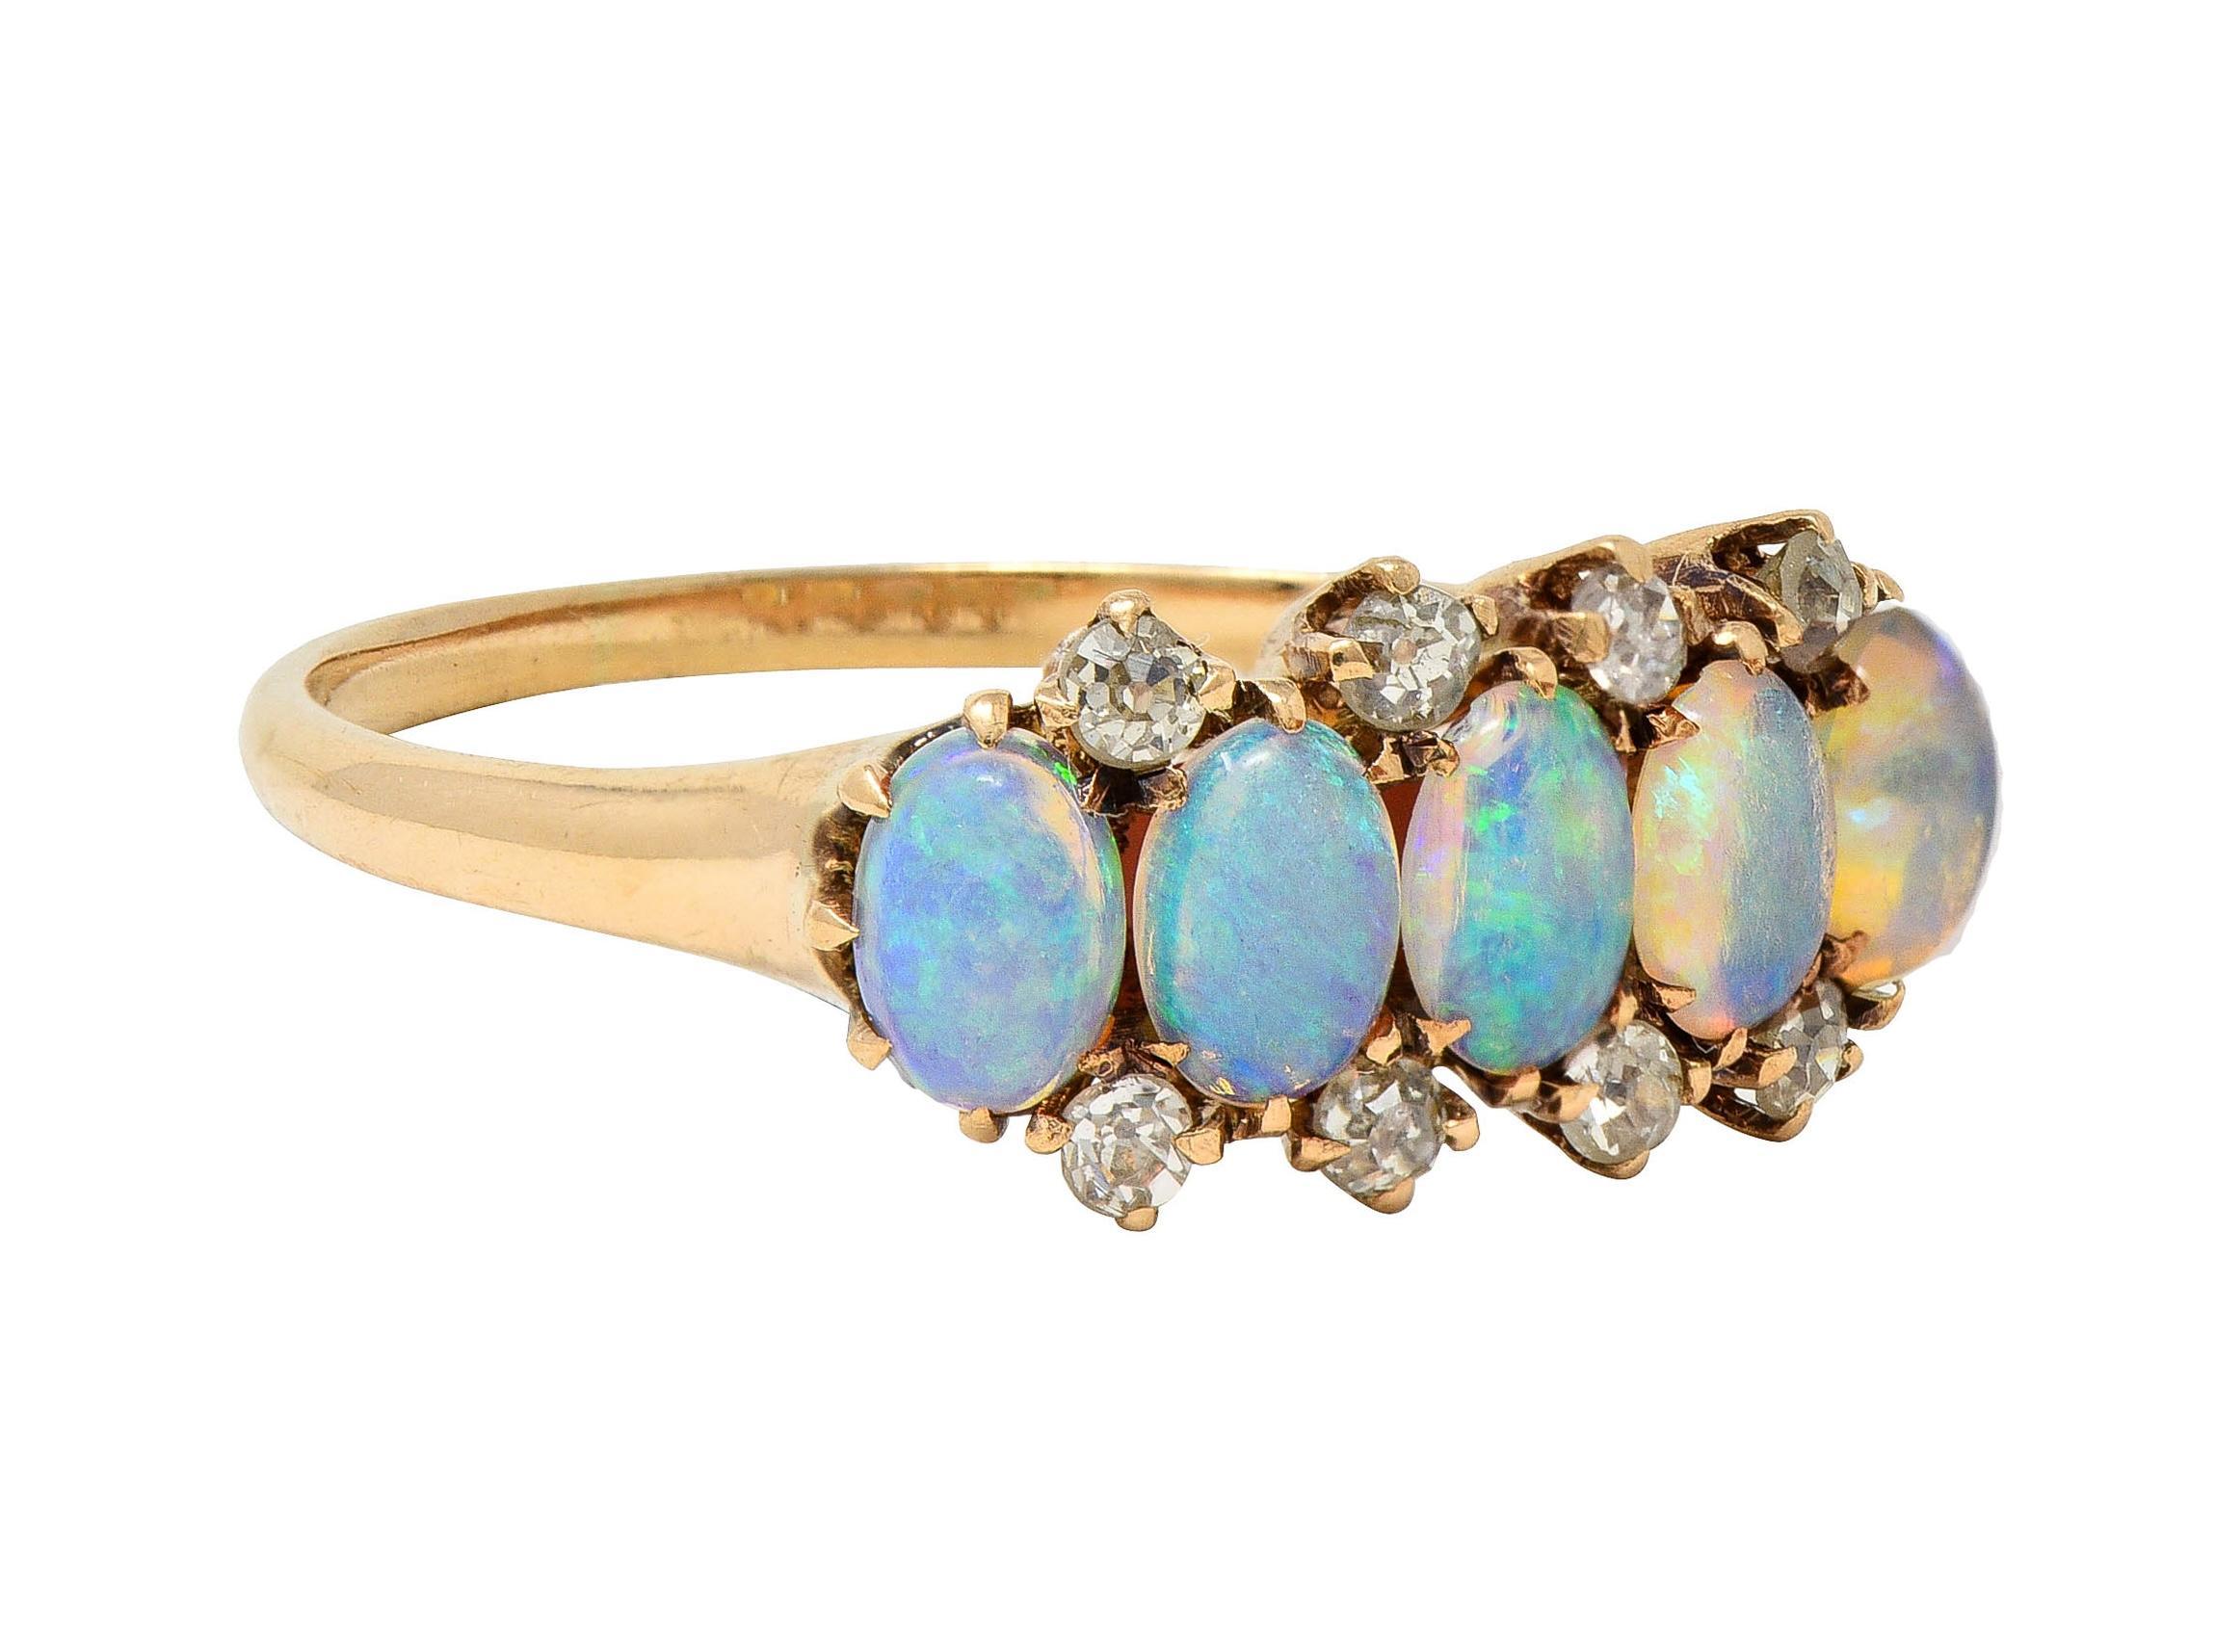 Cinq cabochons d'opale de forme ovale, chacun mesurant 3,0 x 4,5 mm.
Blanc translucide dans la couleur du corps avec un jeu spectral de couleurs - serti en rangées
Accentué par des rangées de diamants anciens de taille unique sertis à